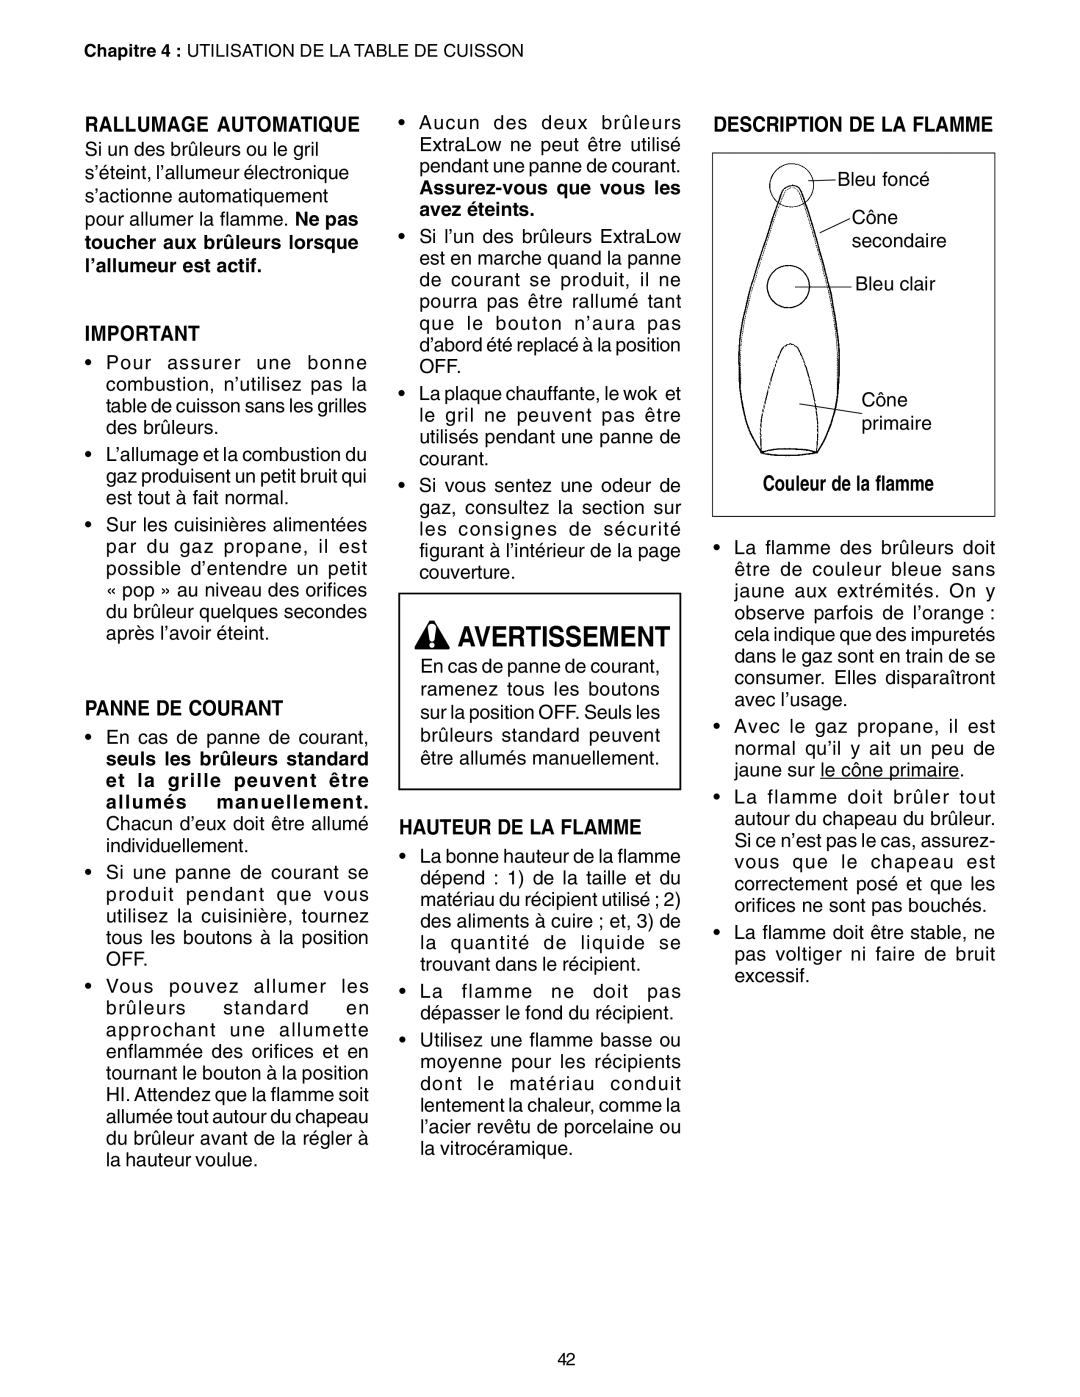 Thermador PC30 Avertissement, Rallumage Automatique, Panne De Courant, Hauteur De La Flamme, Description De La Flamme 